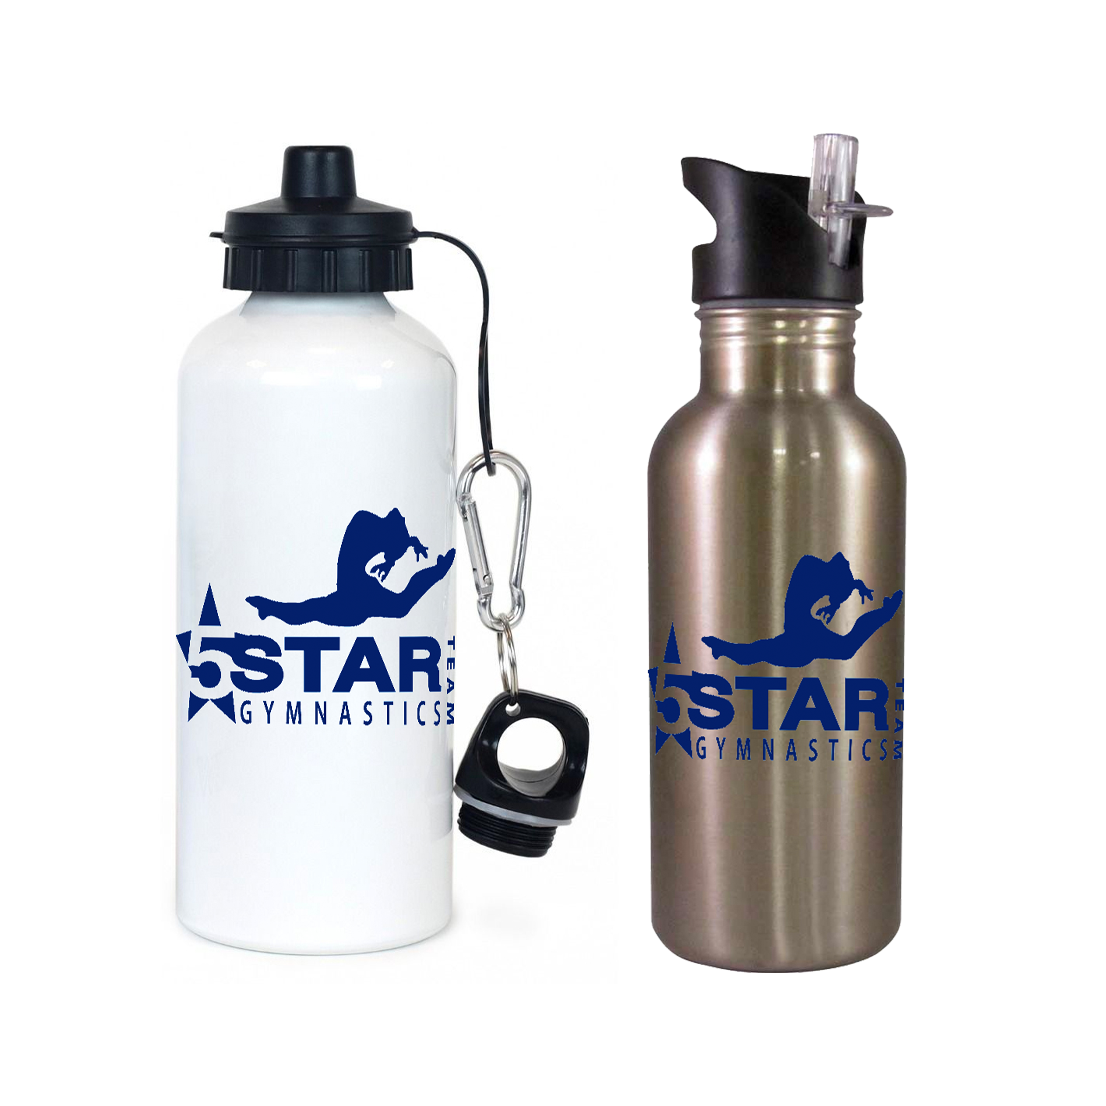 5 Star Gymnastics Team Water Bottle